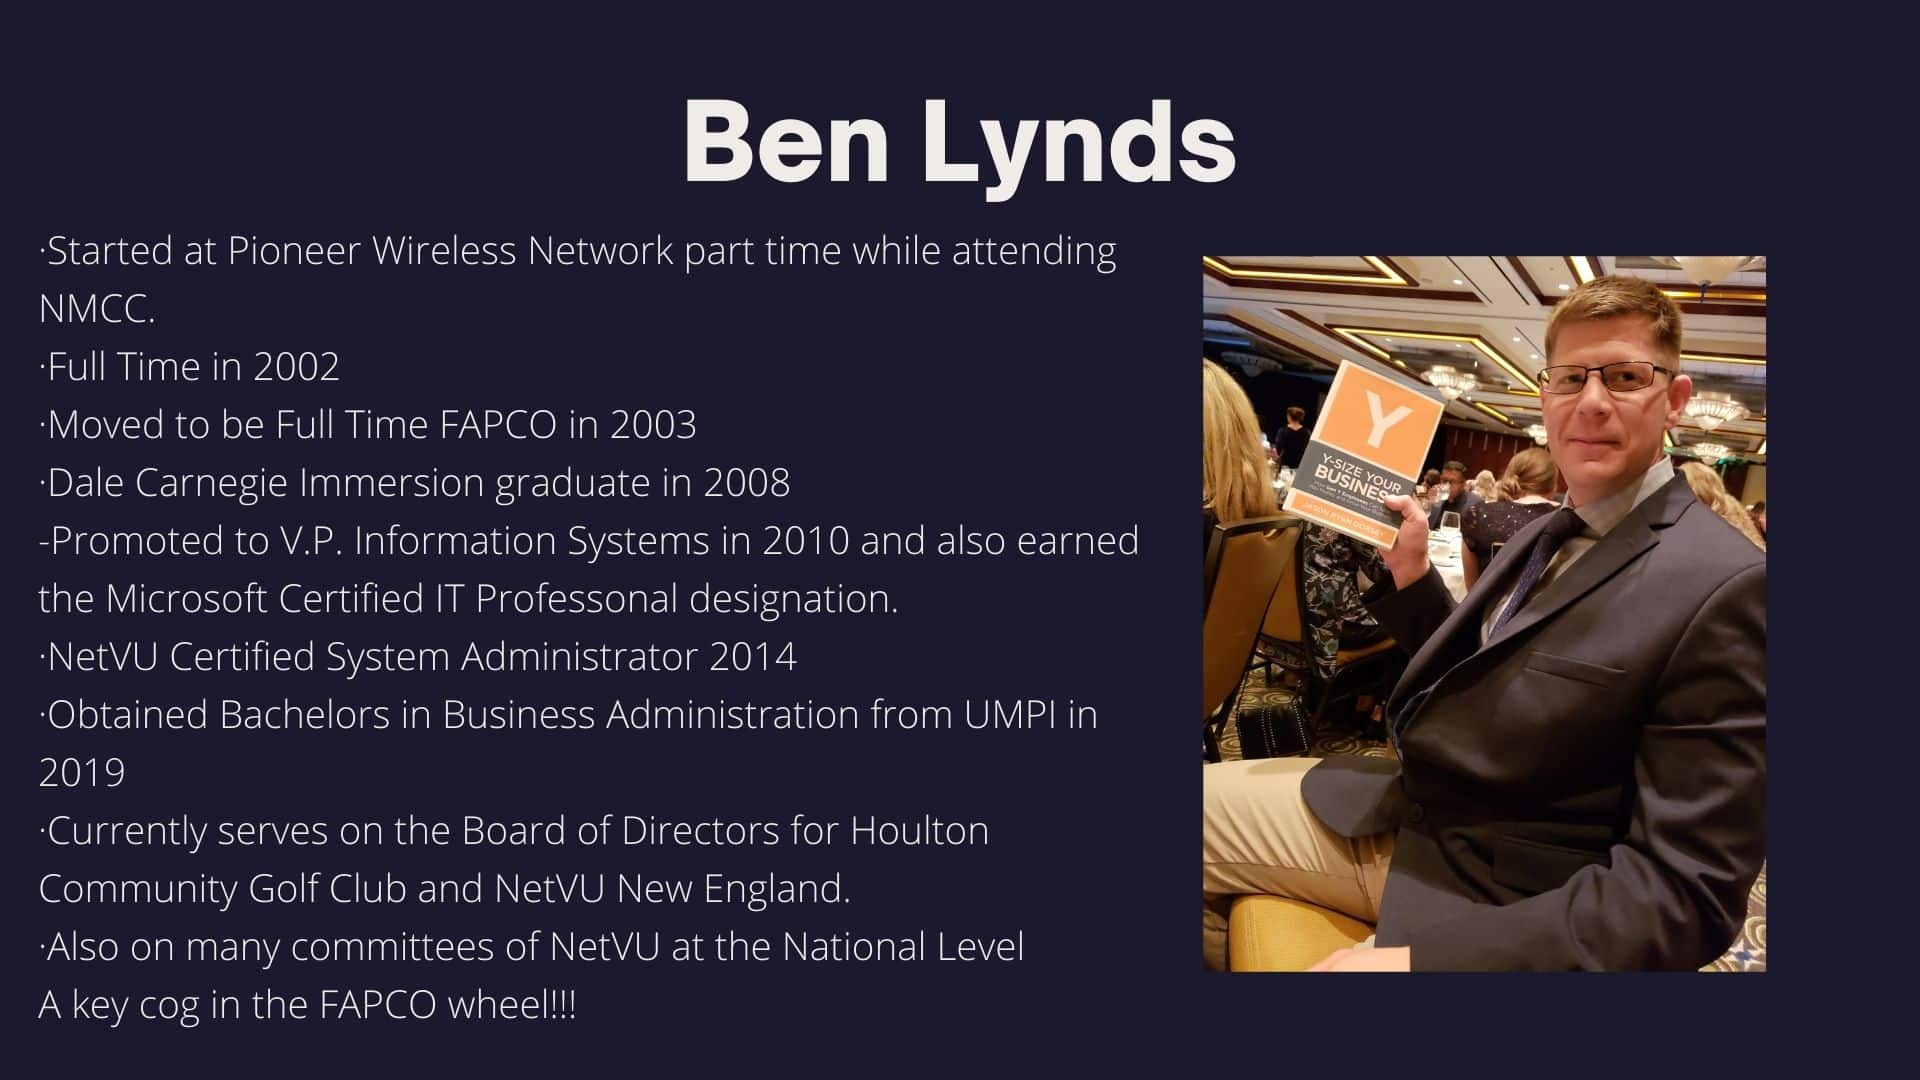 Ben Lynds 20 years